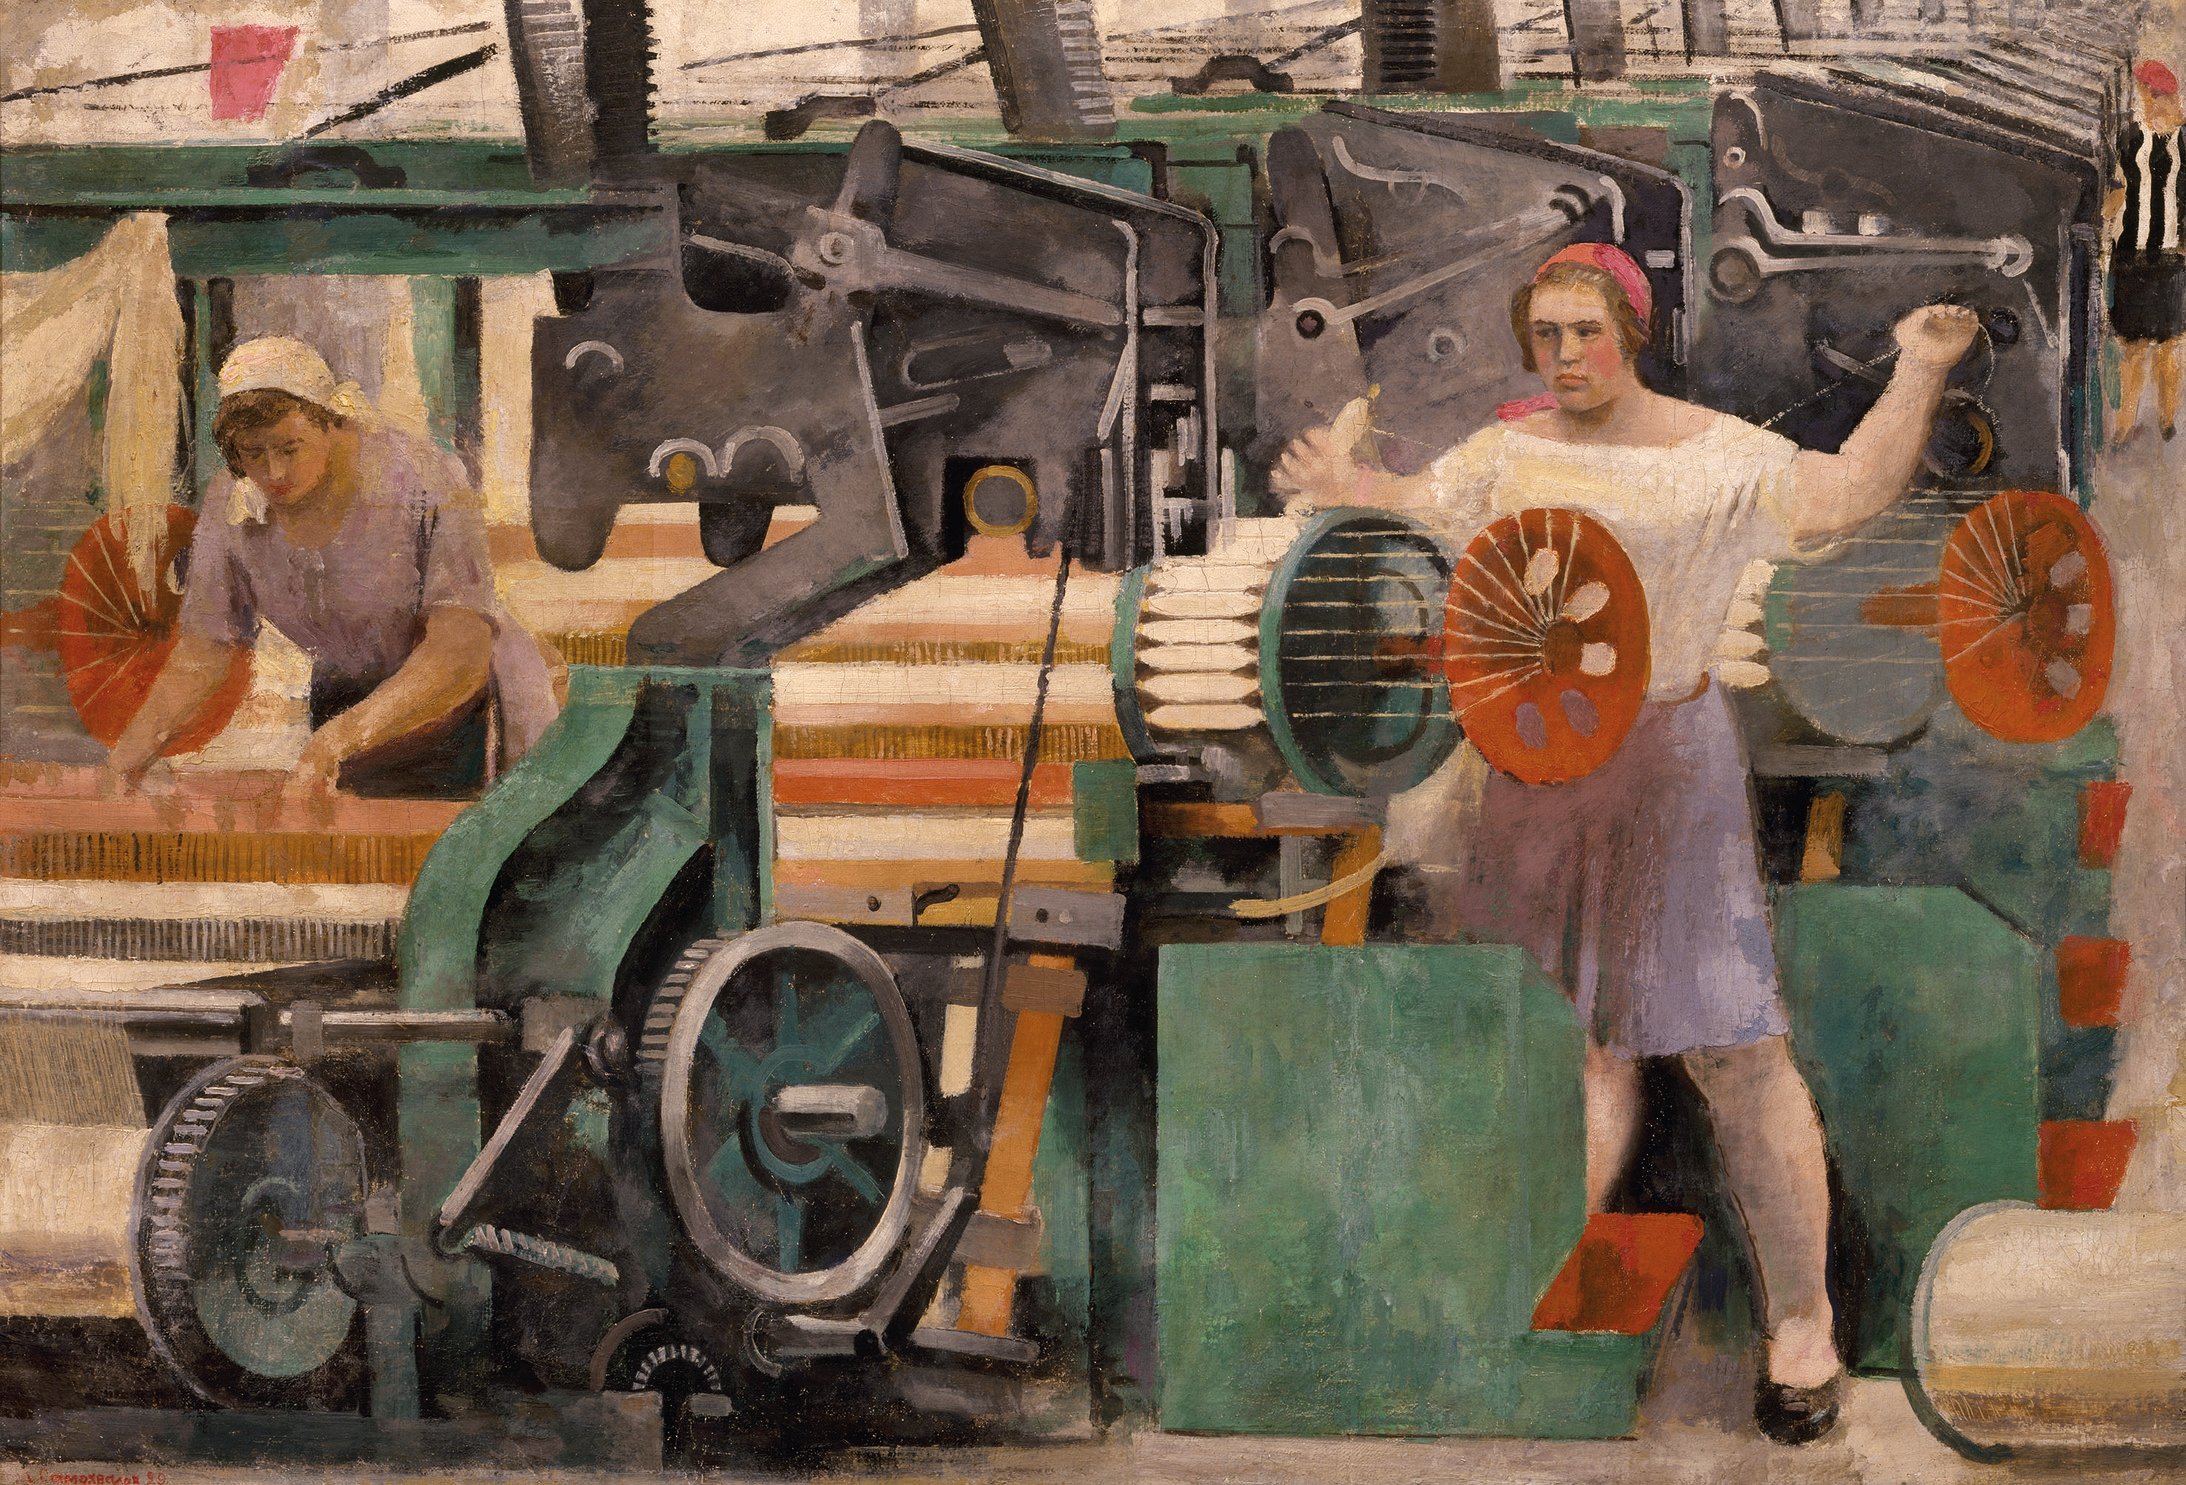 Alexander Samochwalow: Textilfabrik, 1929, Öl, Tempera auf Leinwand, 68 x 98 cm, Staatliches Russisches Museum, St. Petersburg, © 2017 ProLitteris, Zürich